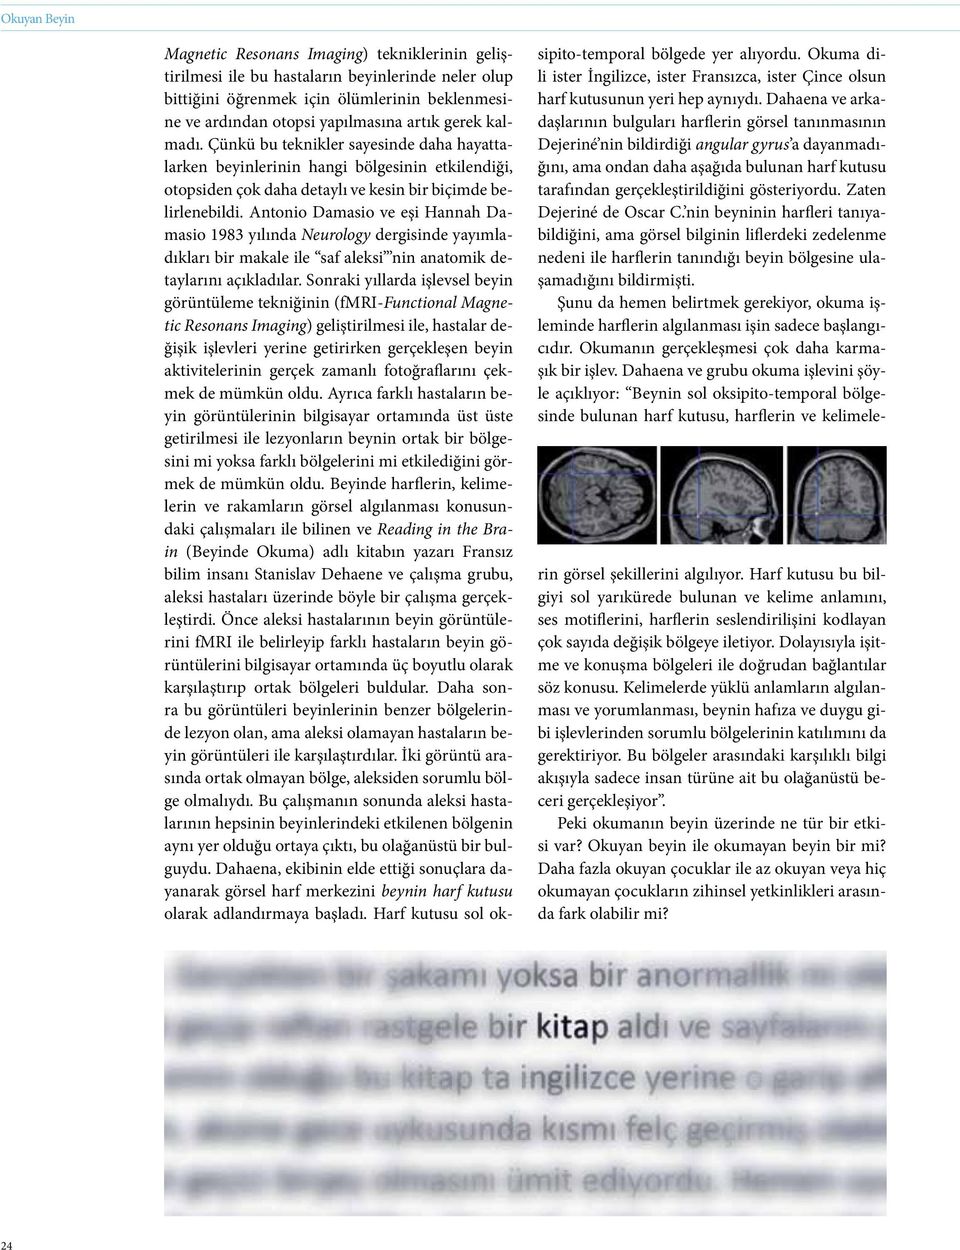 Antonio Damasio ve eşi Hannah Damasio 1983 yılında Neurology dergisinde yayımladıkları bir makale ile saf aleksi nin anatomik detaylarını açıkladılar.